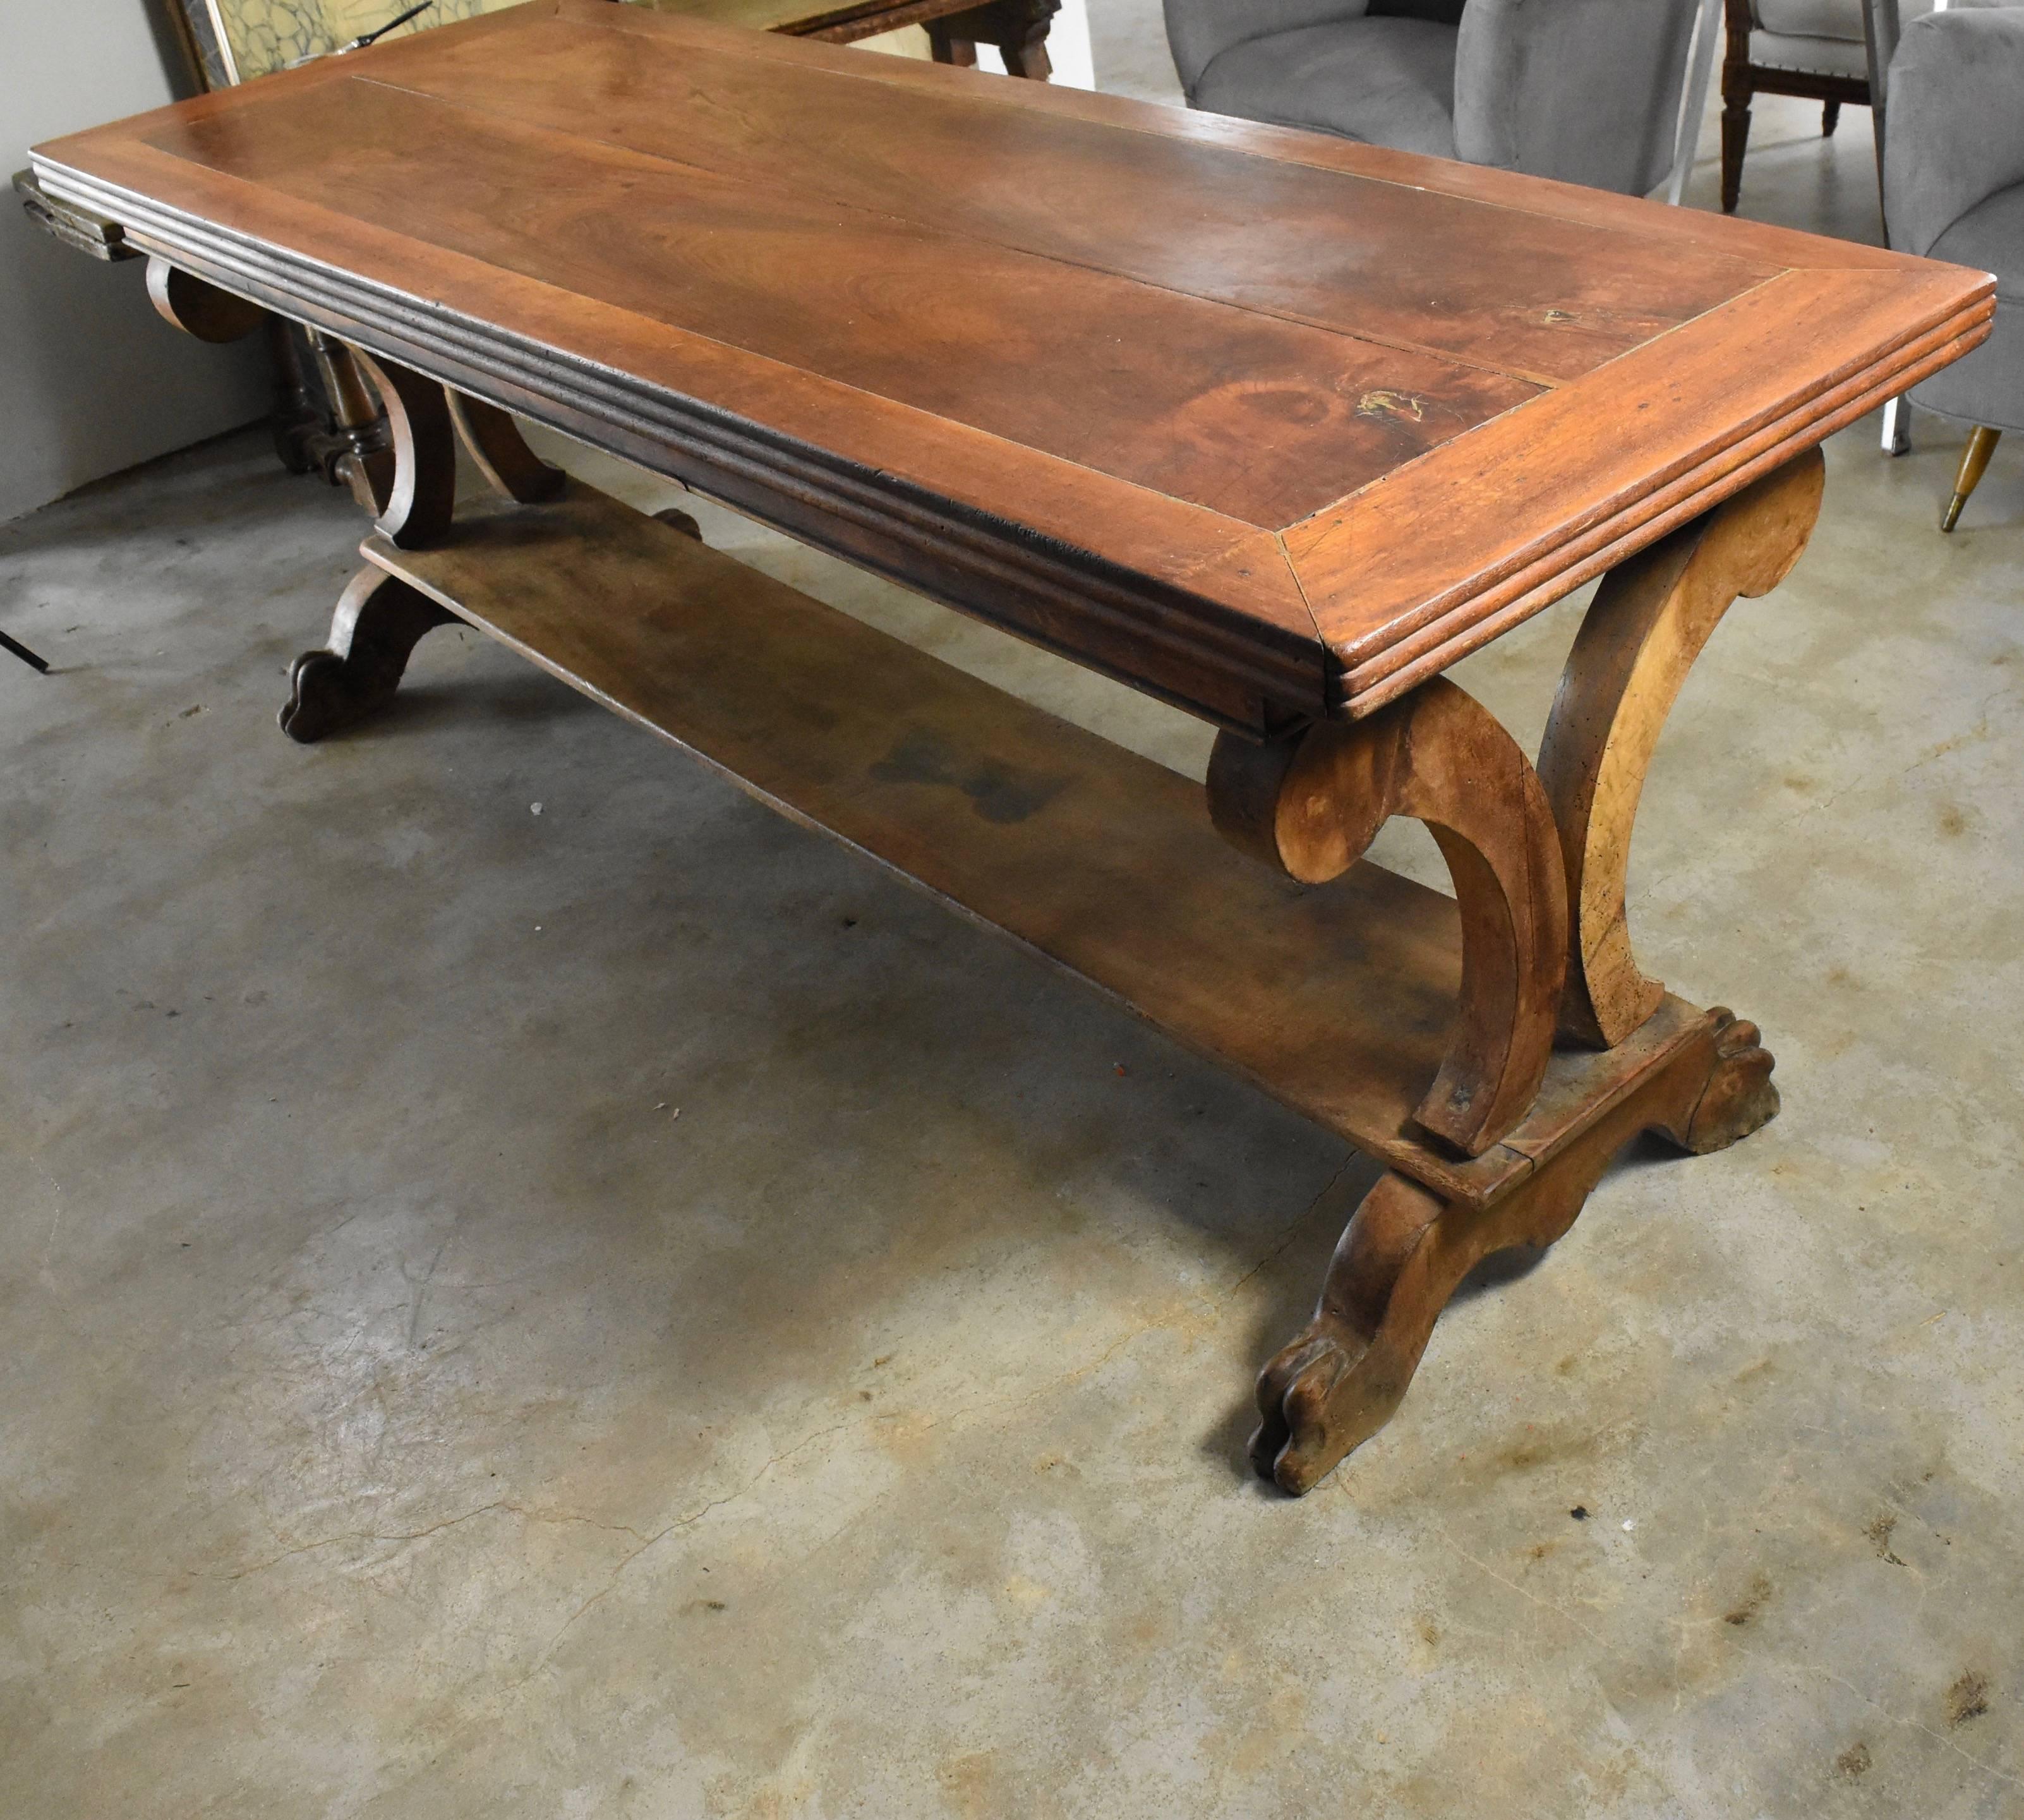 Dies ist wirklich ein schöner Nussbaumtisch aus Frankreich. Es ist der perfekte Schreibtisch oder die perfekte Konsole, die schweben kann, da sie rundherum fertig ist. Er hat handgeschnitzte Löwenkrallenfüße und ist strukturell sehr